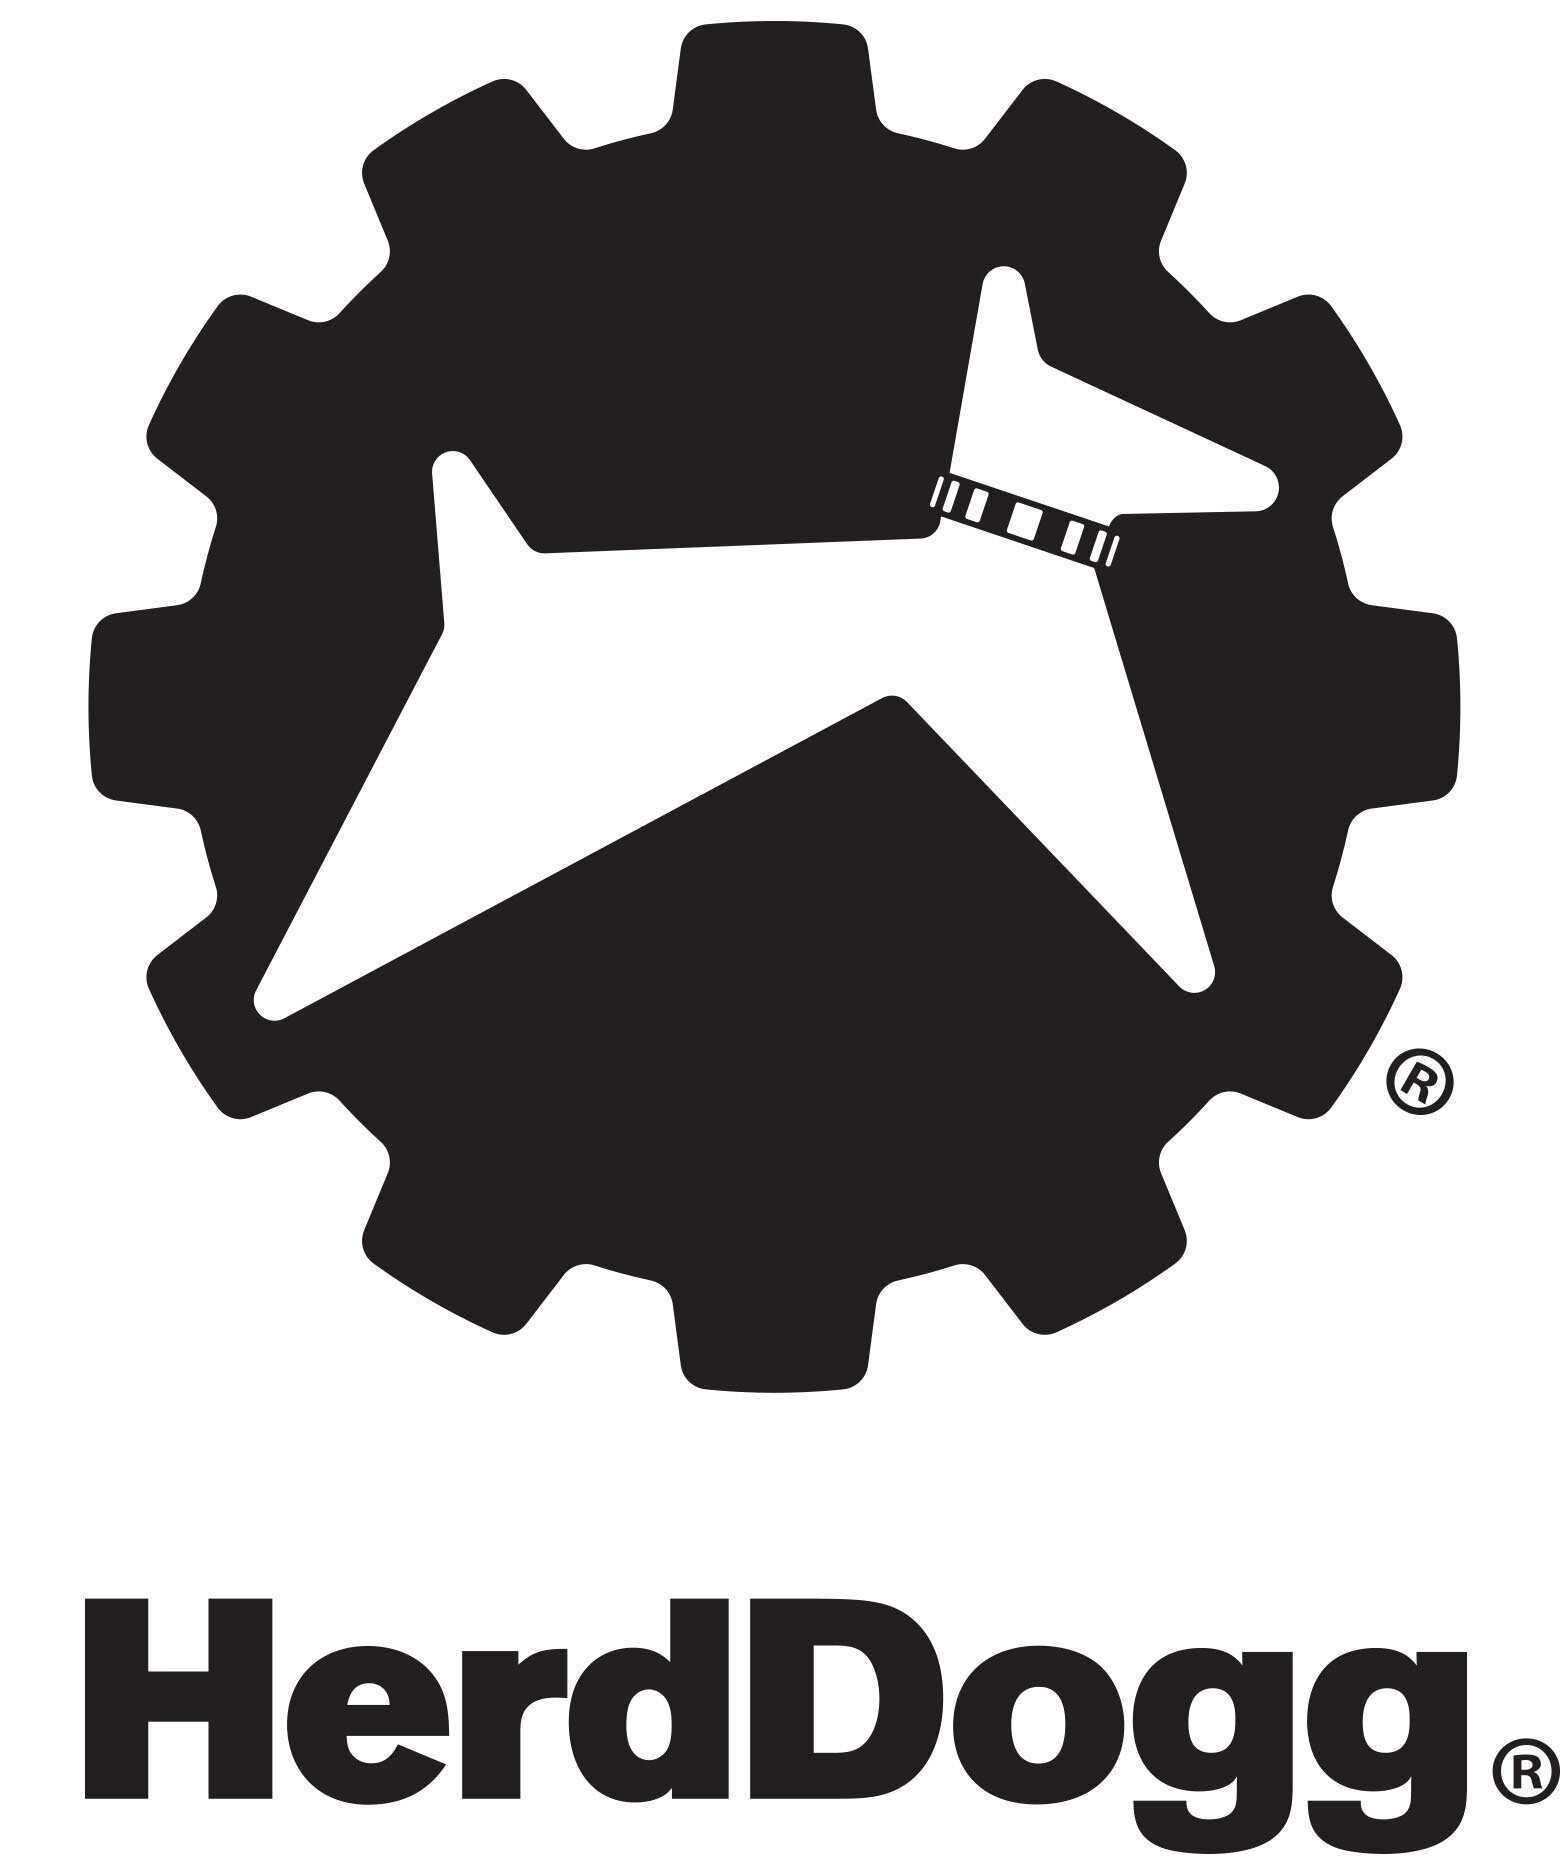 herddogg_logo+logotype_black.jpg